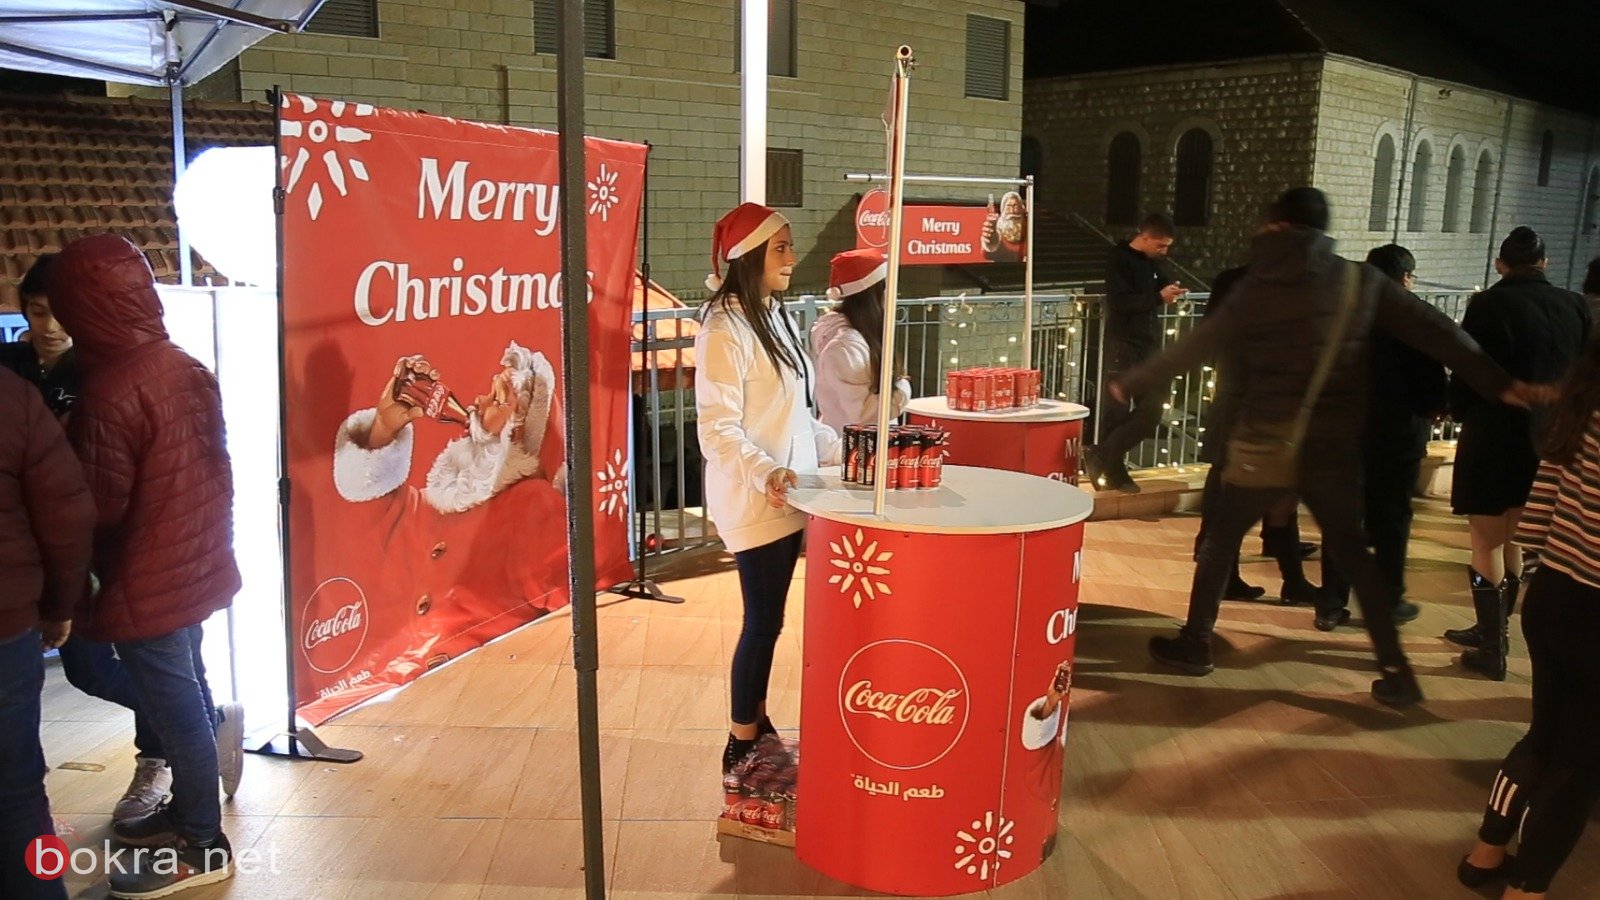 تتويج فعاليات الميلاد بأضخم عرض استعراضي غنائي راقص "كسارة الجوز" في الناصرة، برعاية كوكاكولا-4